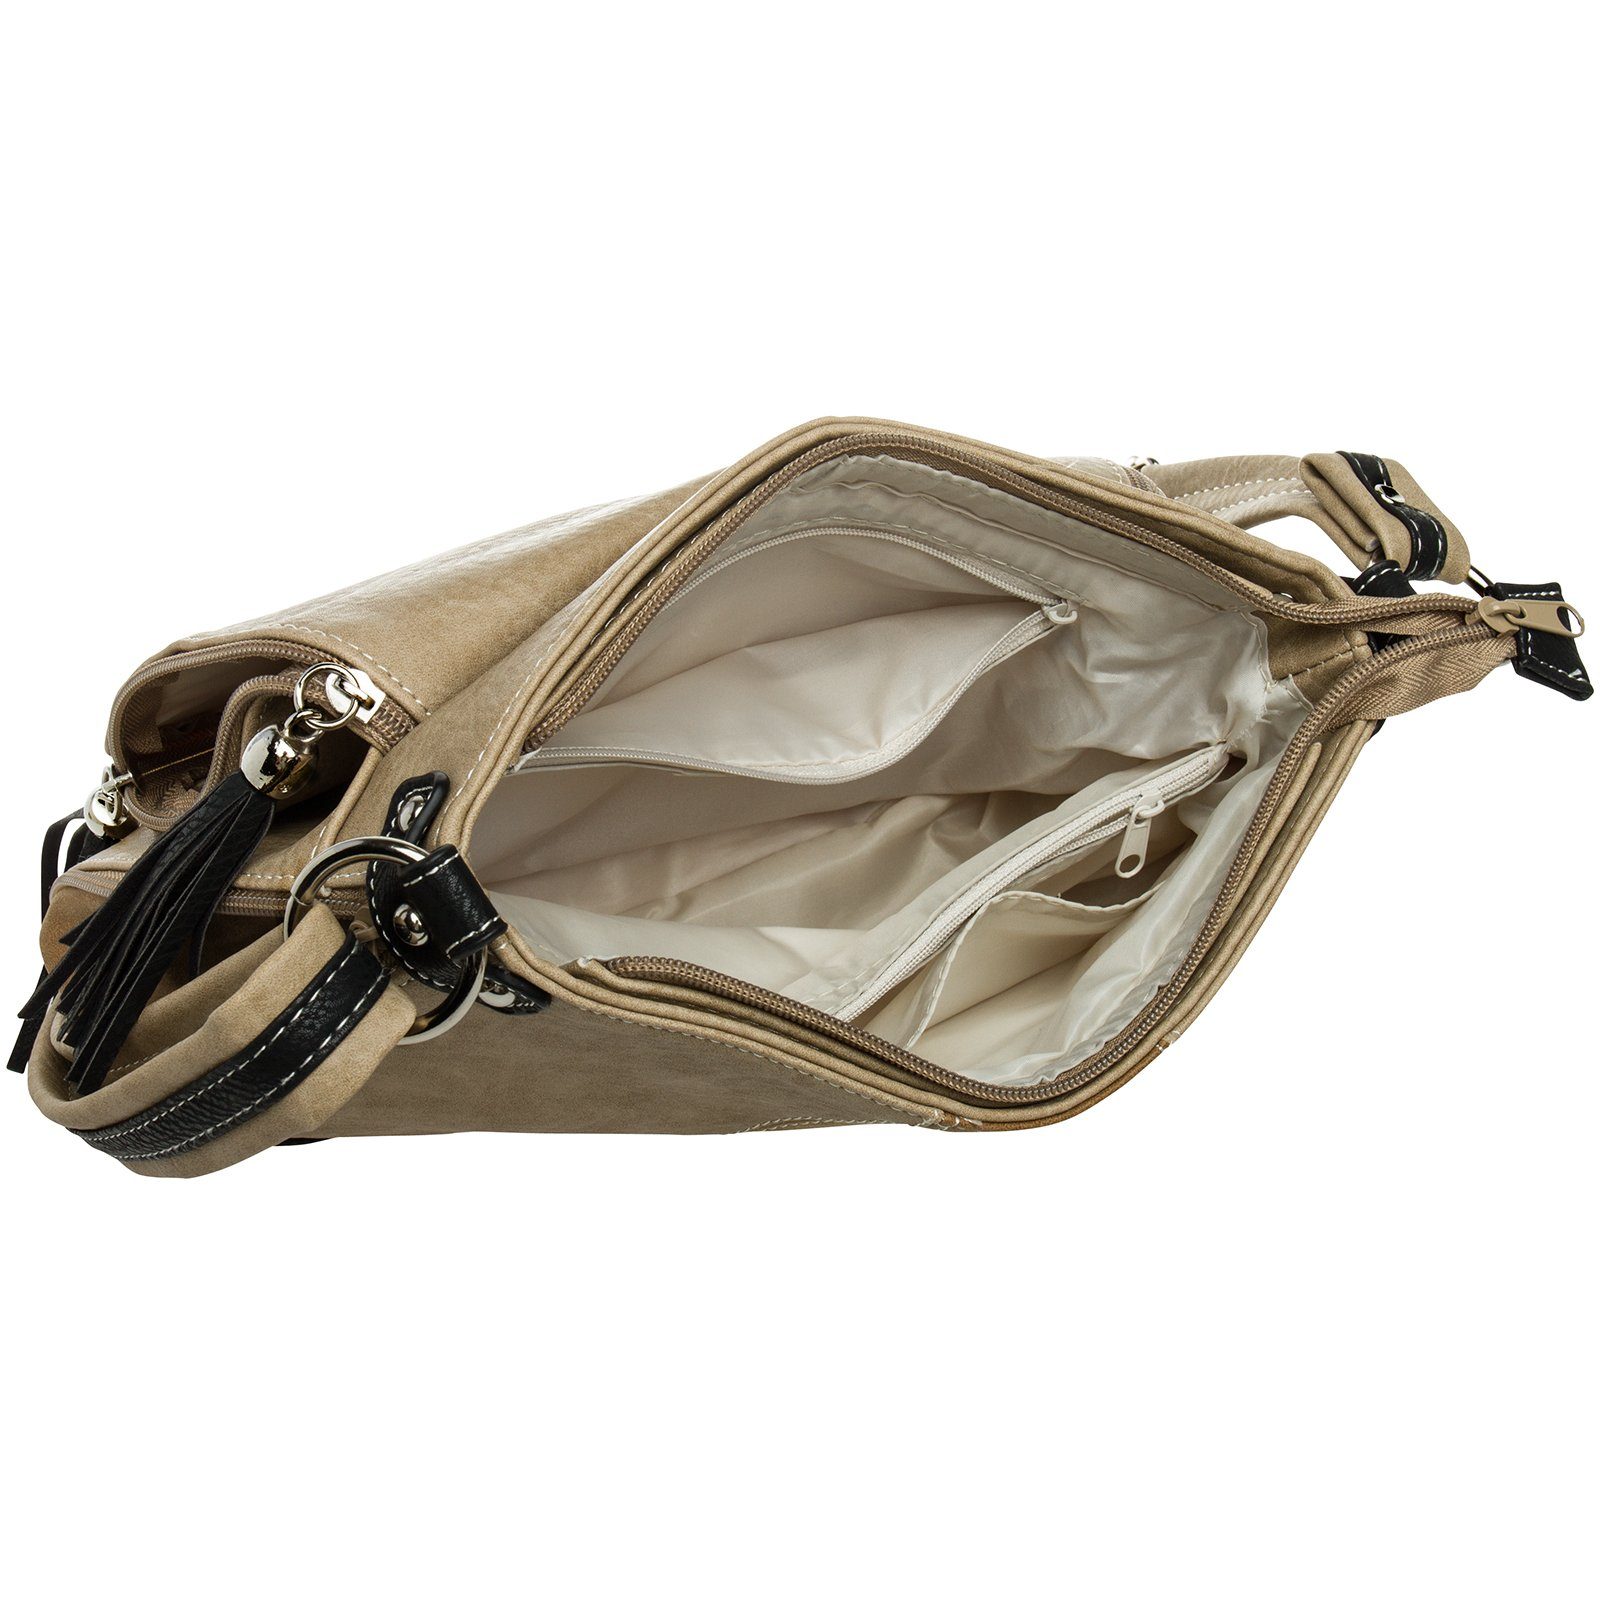 Damen TS1028 #15105 beige Umhängetasche Umhängetasche Caspar schwarz Tasche braun Umhängetasche - Modelle diverse Rucksack Handtasche